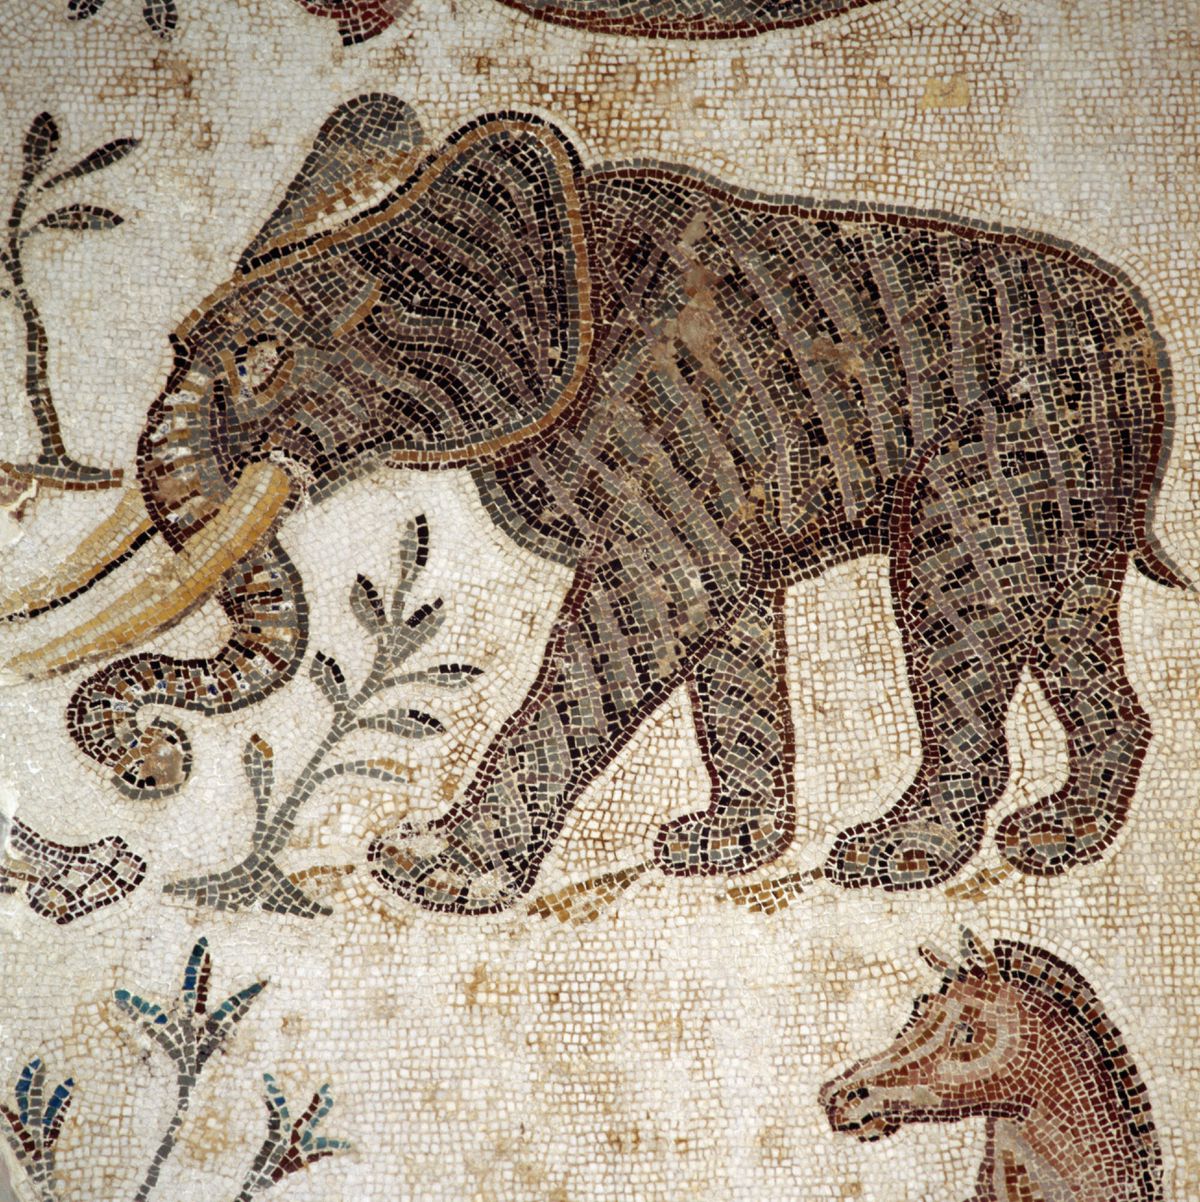 Descubren en Córdoba un elefante de la época de Aníbal Barca y Julio César